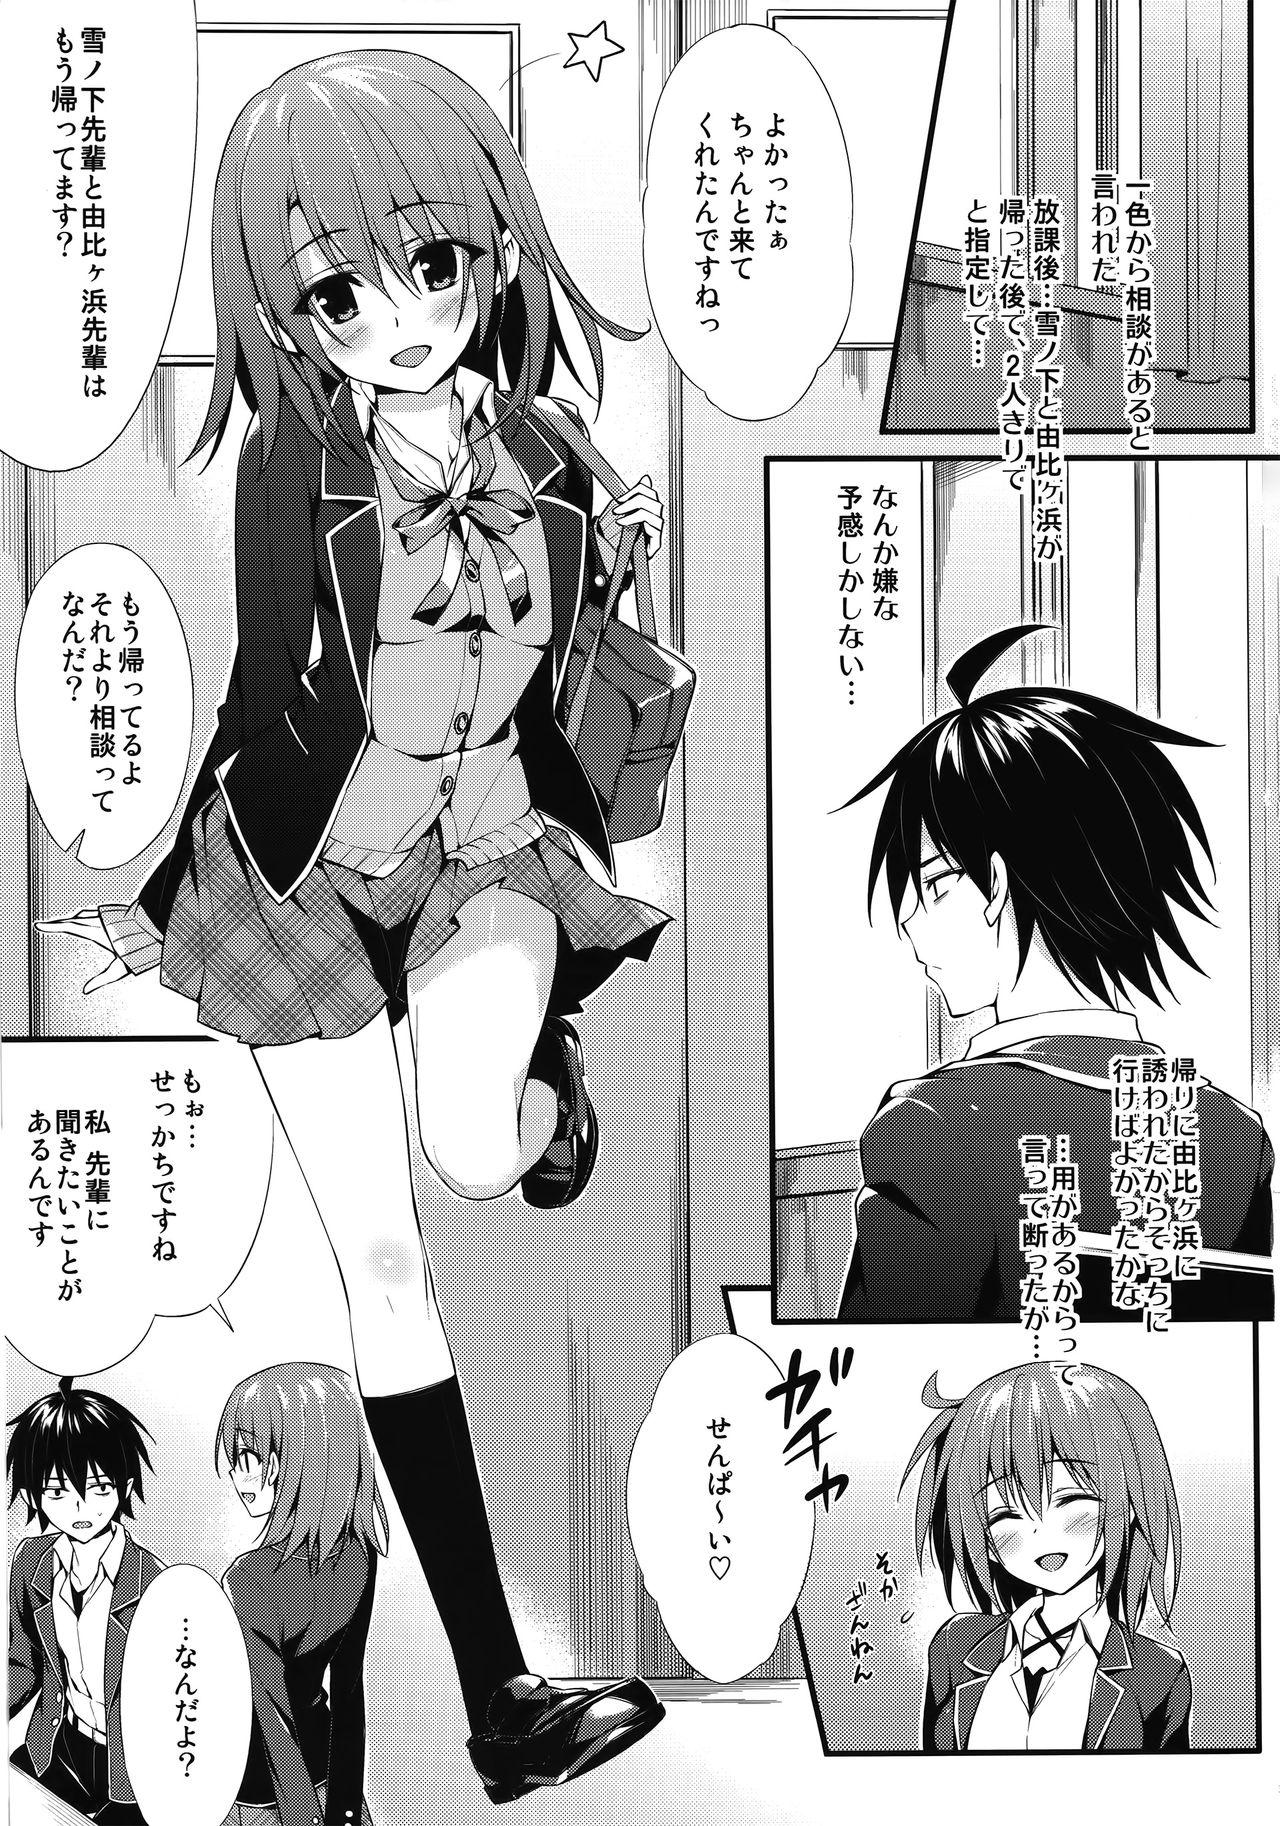 Masturbando Irohasu Gentei - Yahari ore no seishun love come wa machigatteiru Oral Porn - Page 2